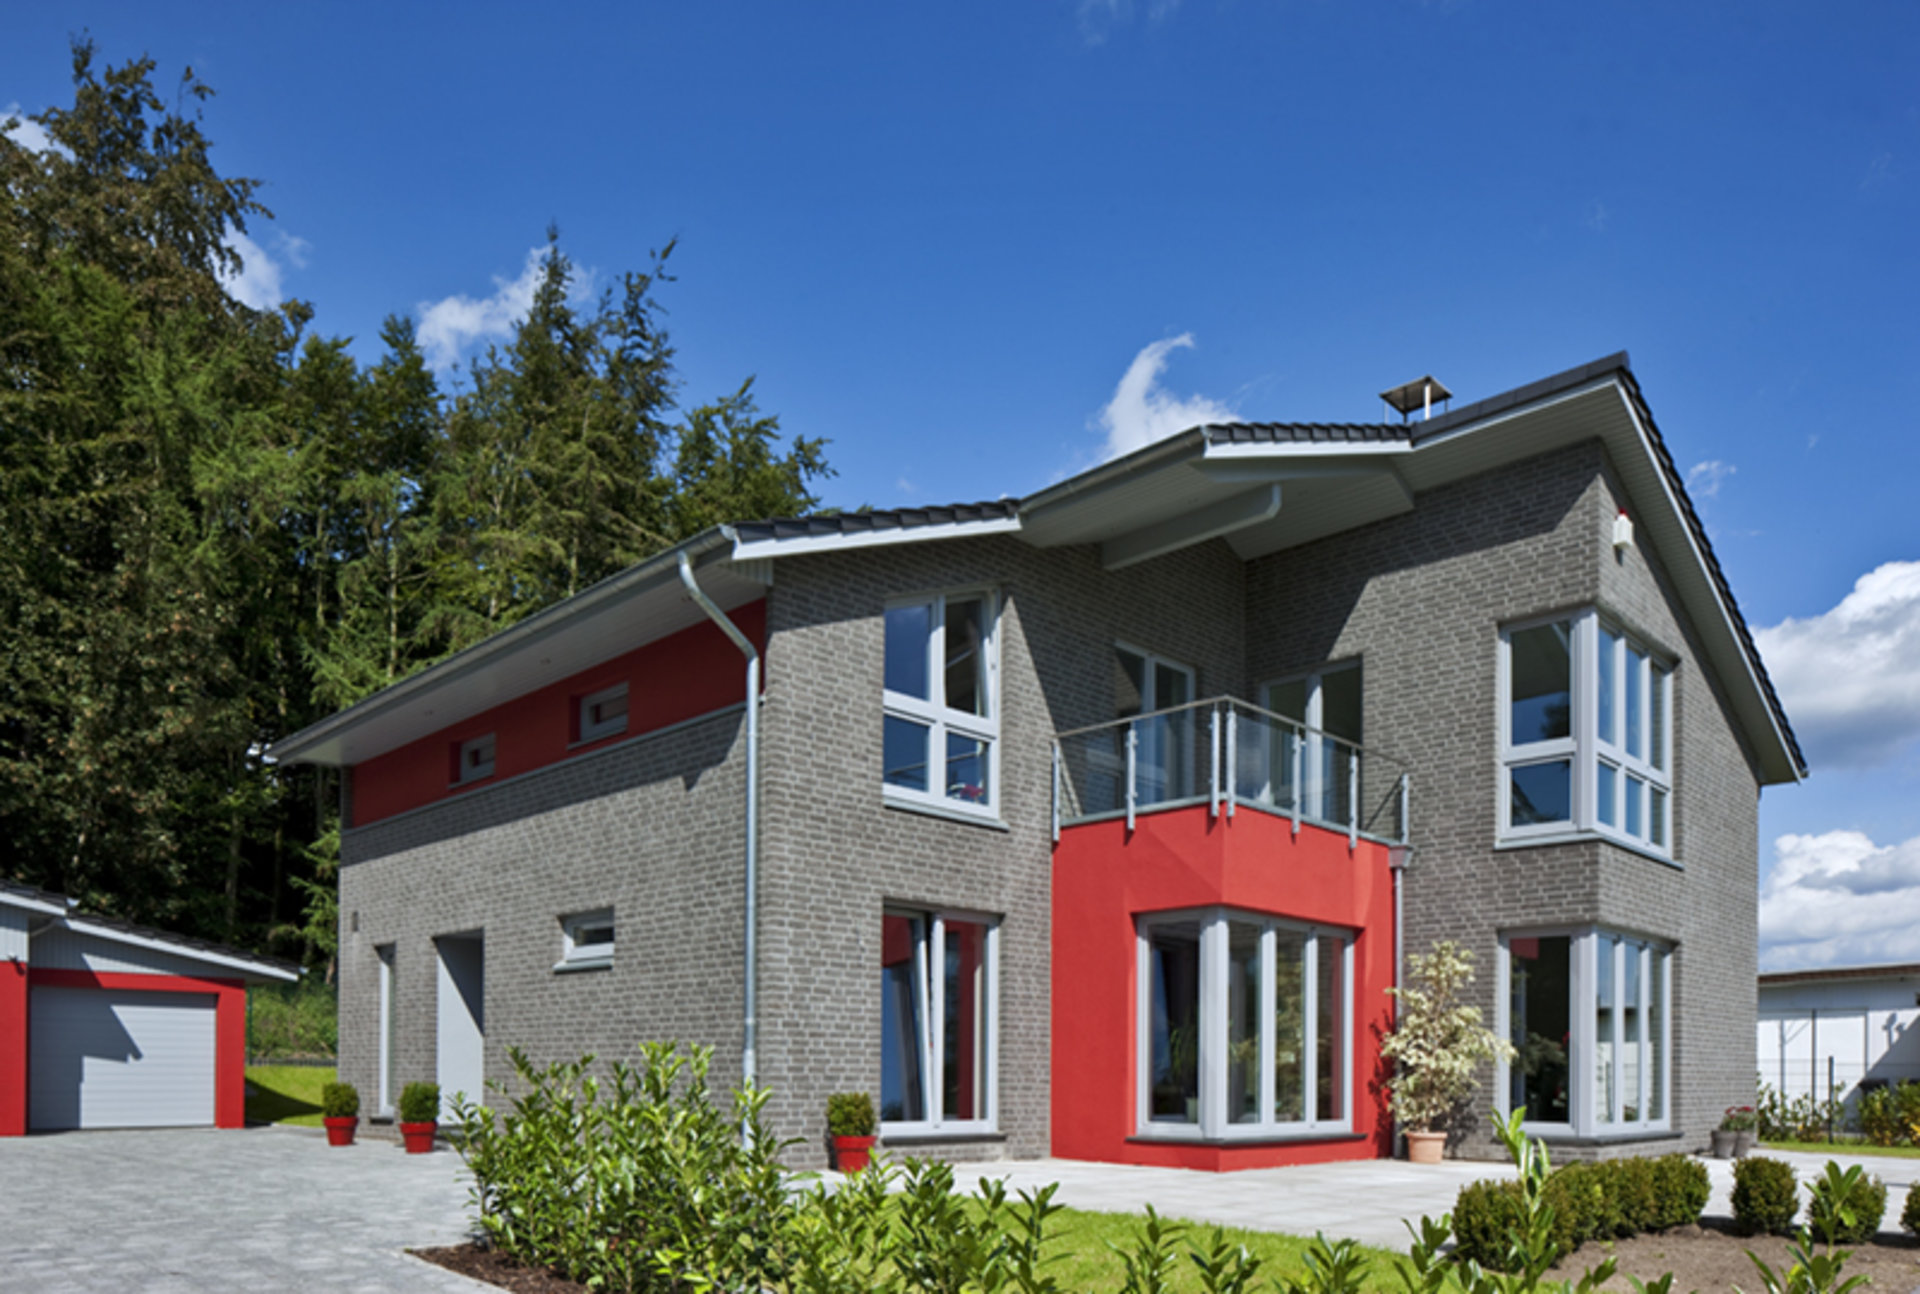 Haus Nelsen mit mit Klinker- und Putzfassade und bodentiefen Eckfenstern (Foto: BAUMEISTER-HAUS)